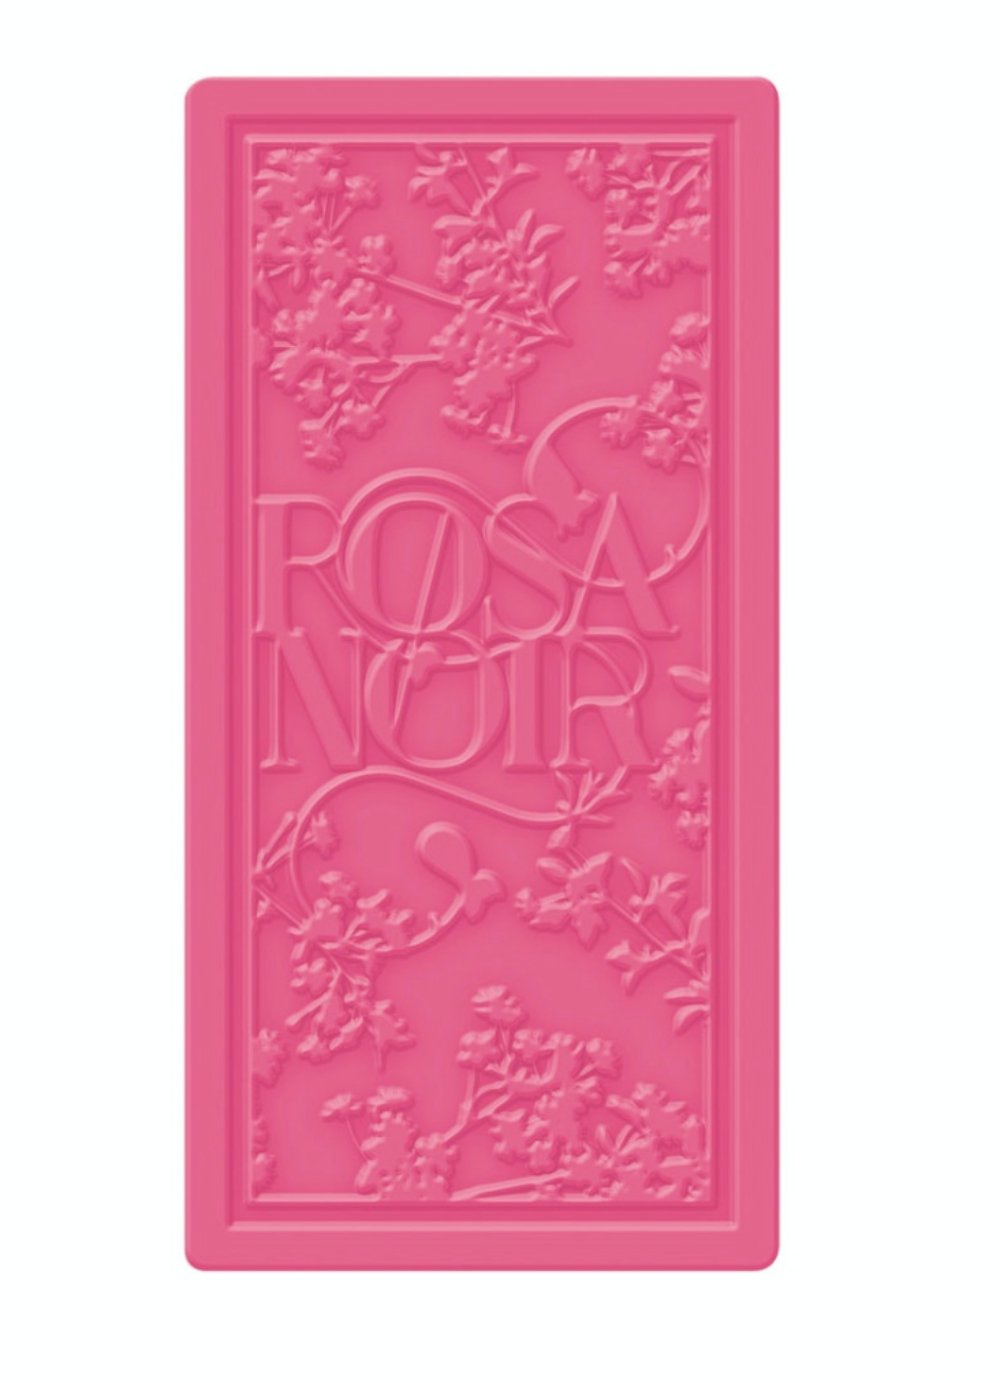 MOR Rosa Noir Boxed Triple-Milled Soap 180g - The Face Method